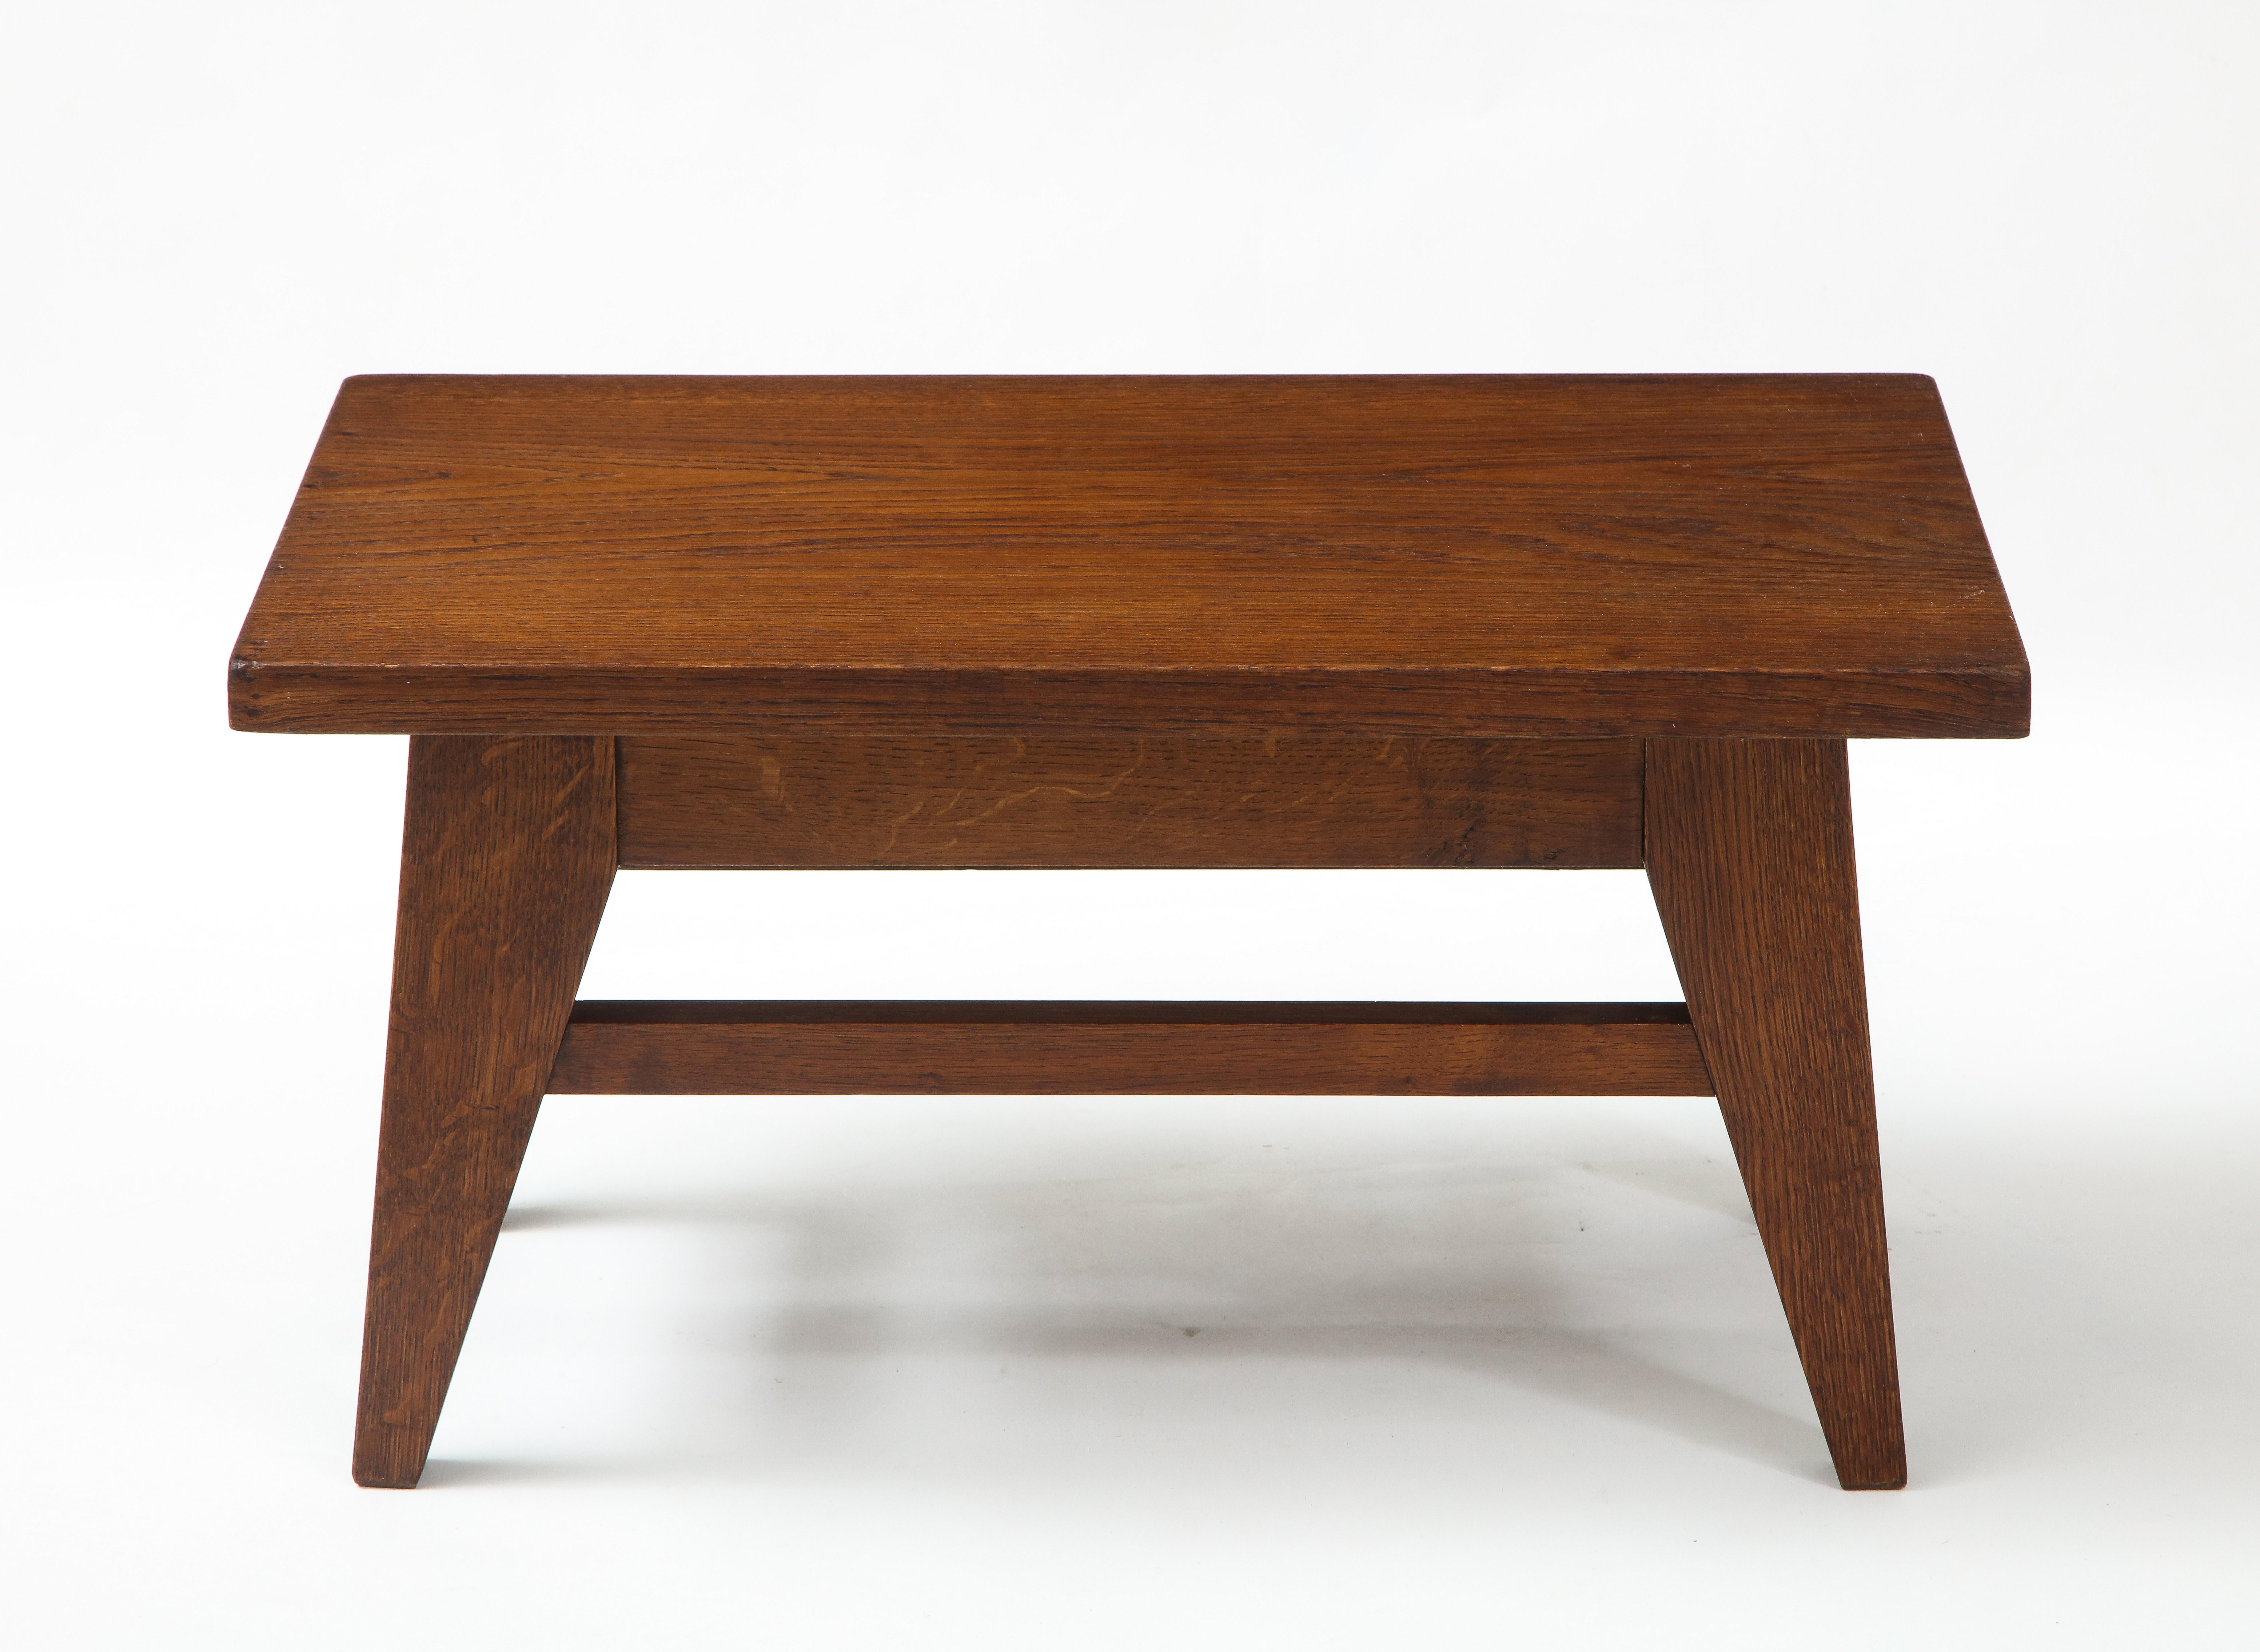 René Gabriel style low table stool, France, c. 1950
Oak
Measures: H: 13 D: 14.25 W: 24 in.
?